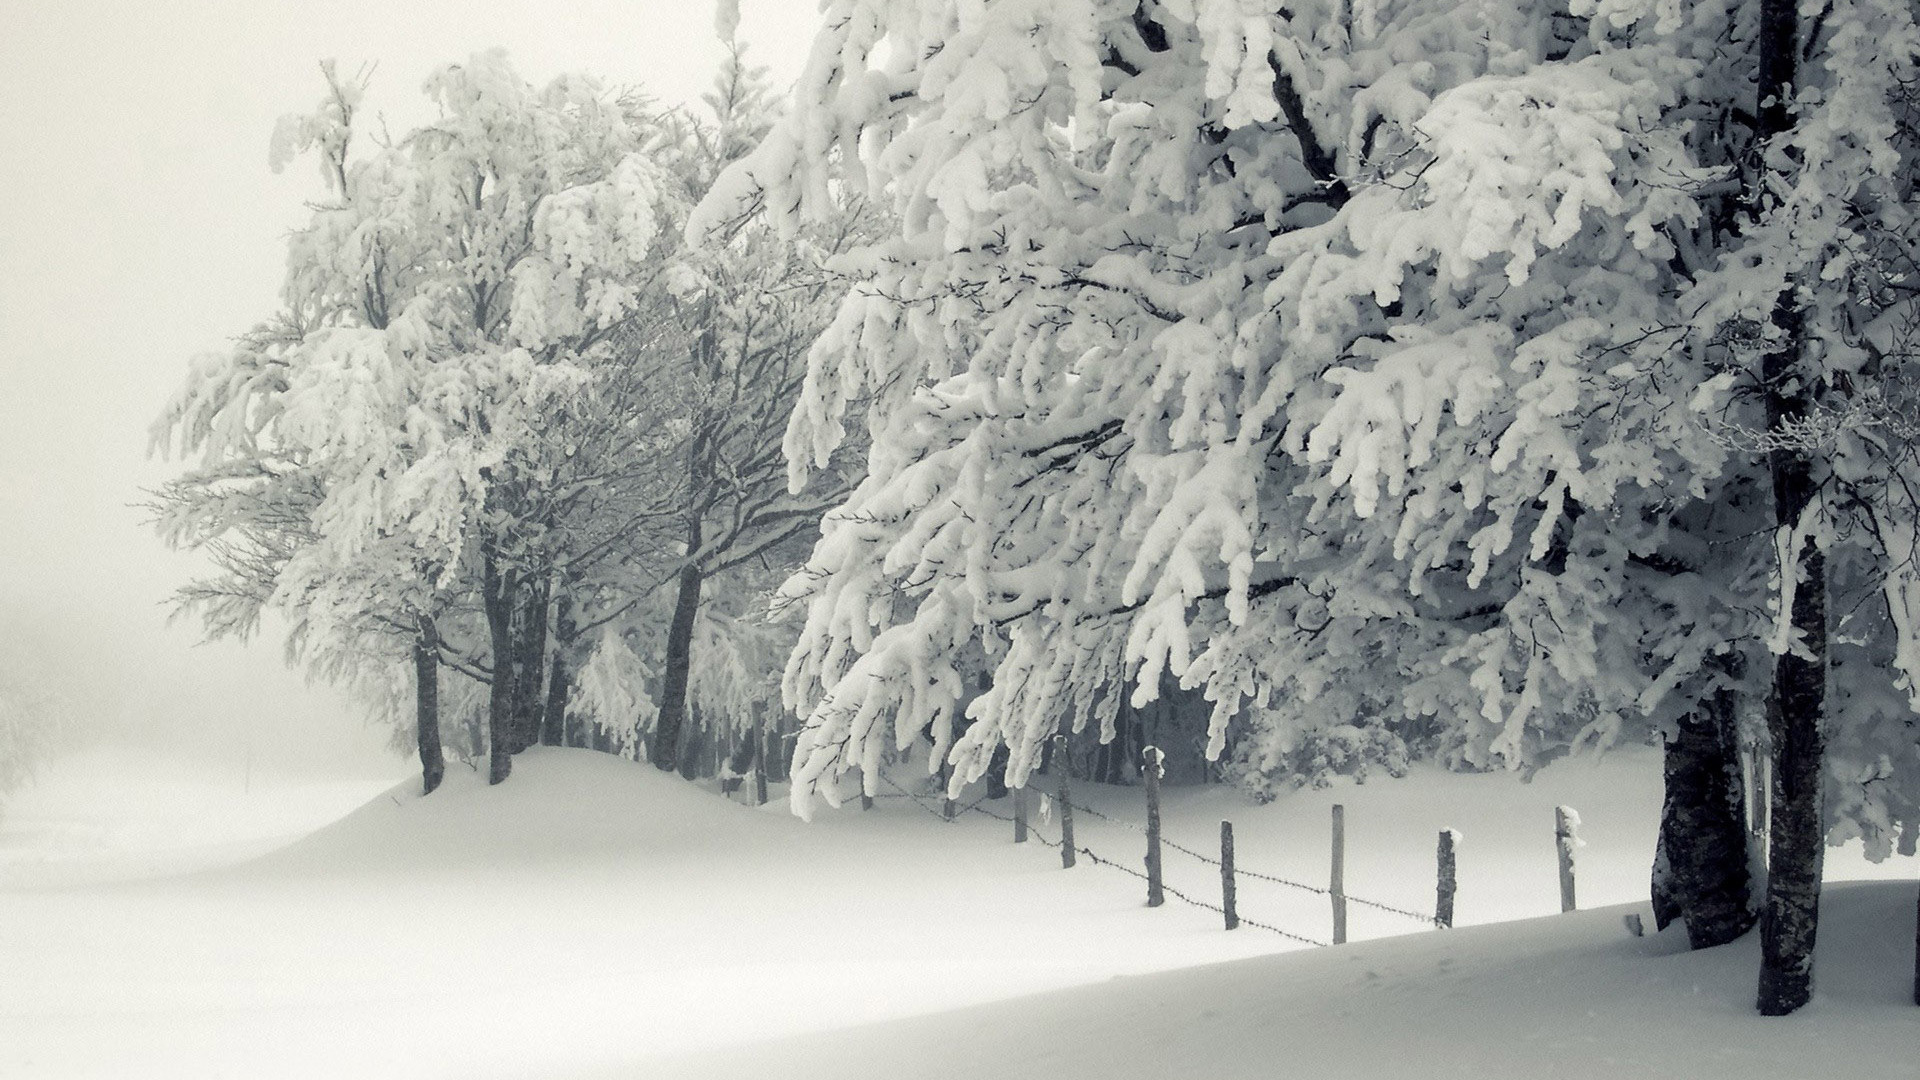 HD wallpaper snowy pine trees firtrees winter avenue ranks sky  gloomy  Wallpaper Flare